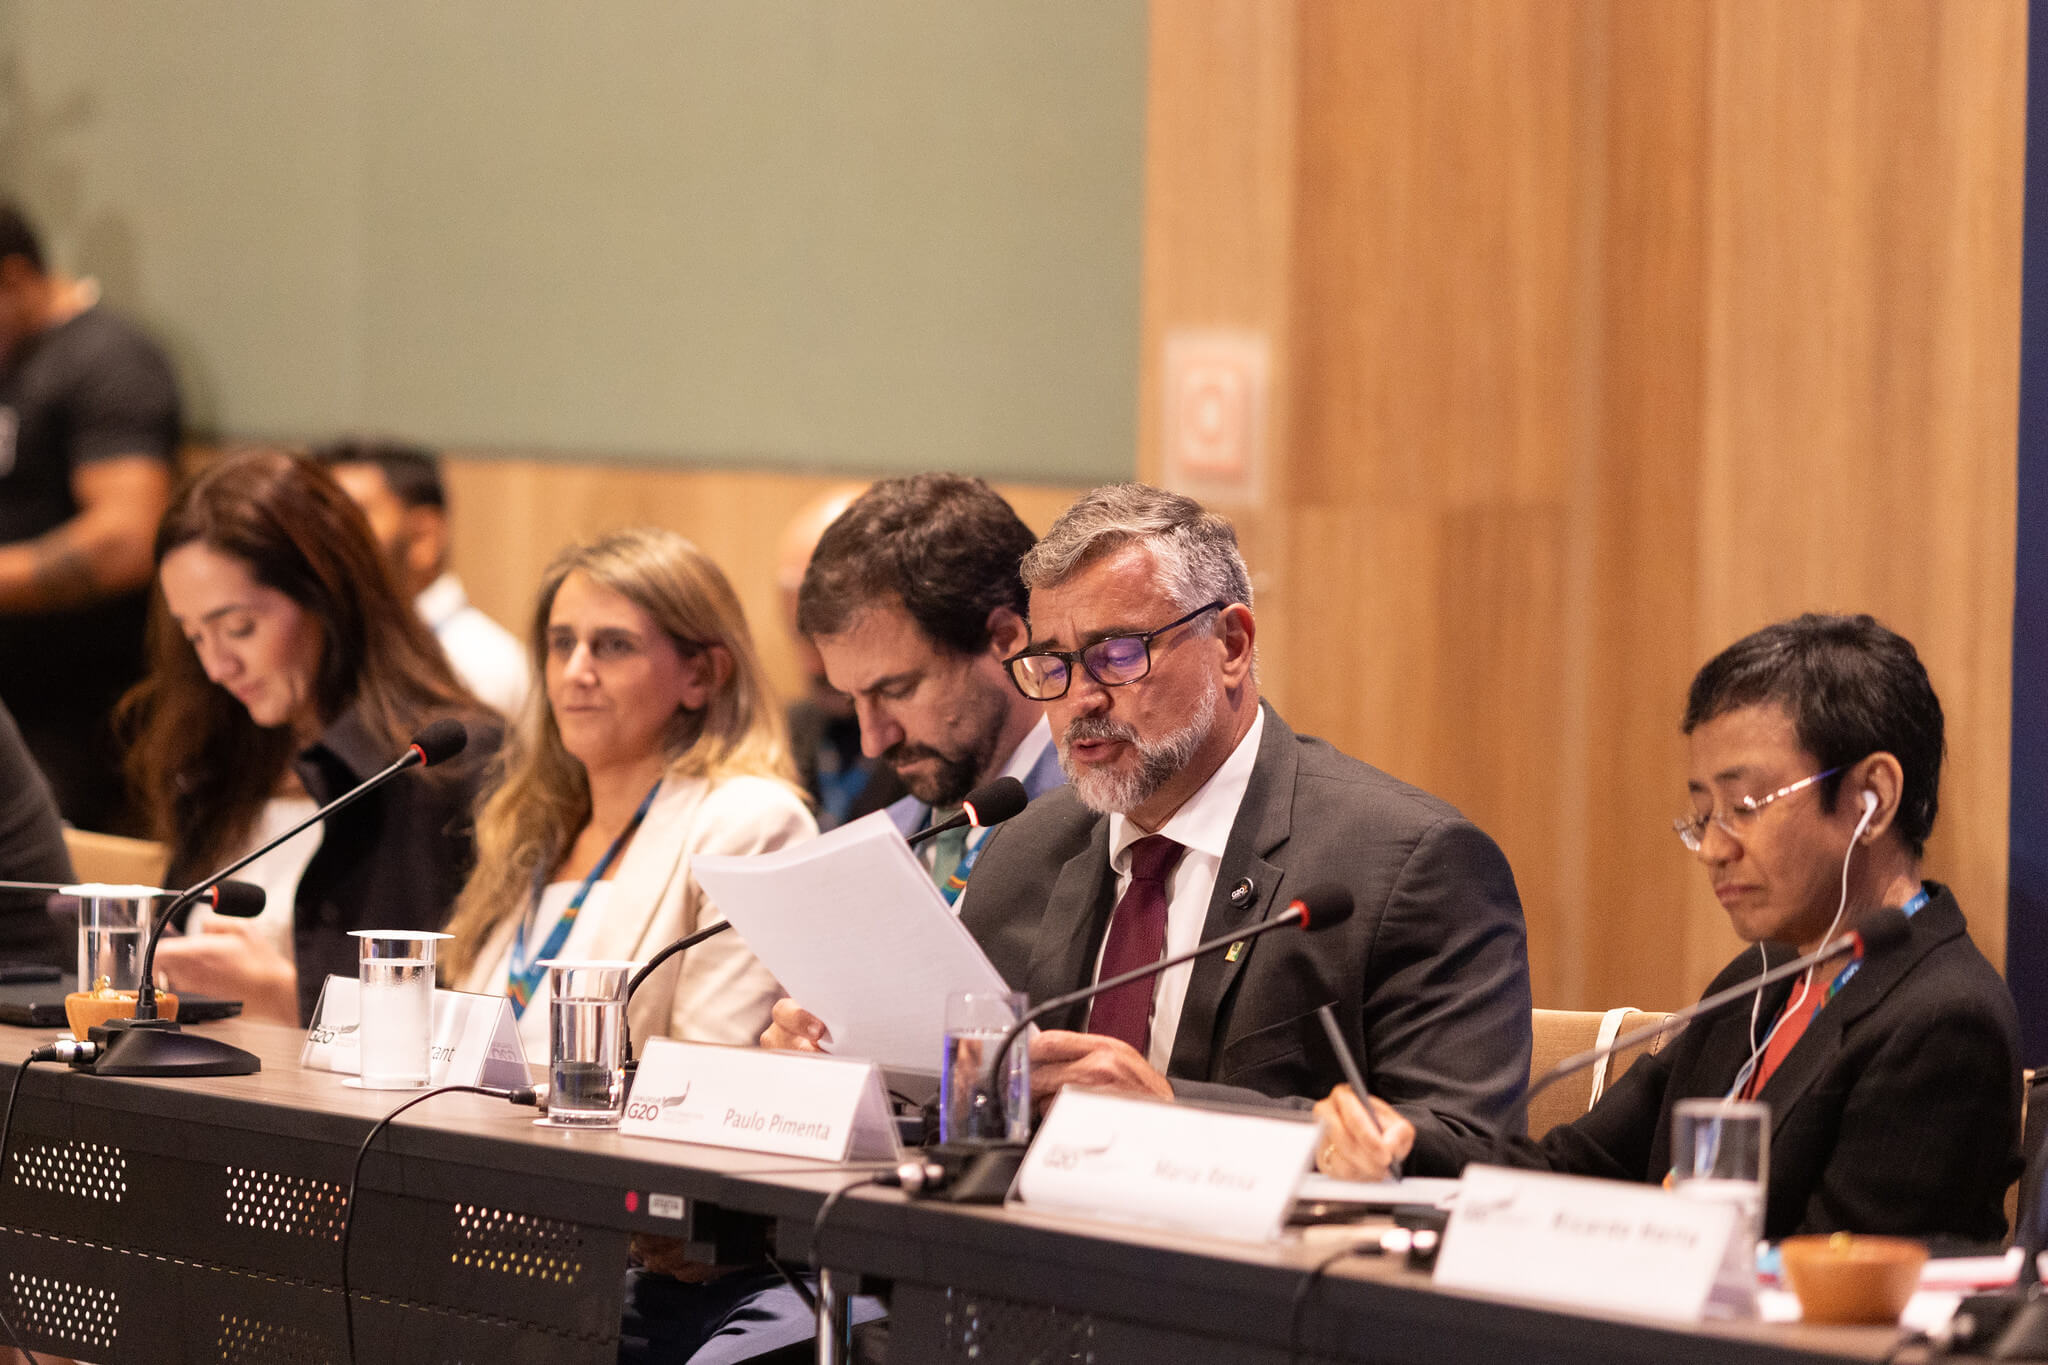 Ministro Paulo Pimenta, da Secom/PR, alerta para o avanço dos discursos de ódio on-line e as similaridades entre os países do Sul Global para enfrentar os desafios contemporâneos | Foto: Audiovisual G20 Brasil